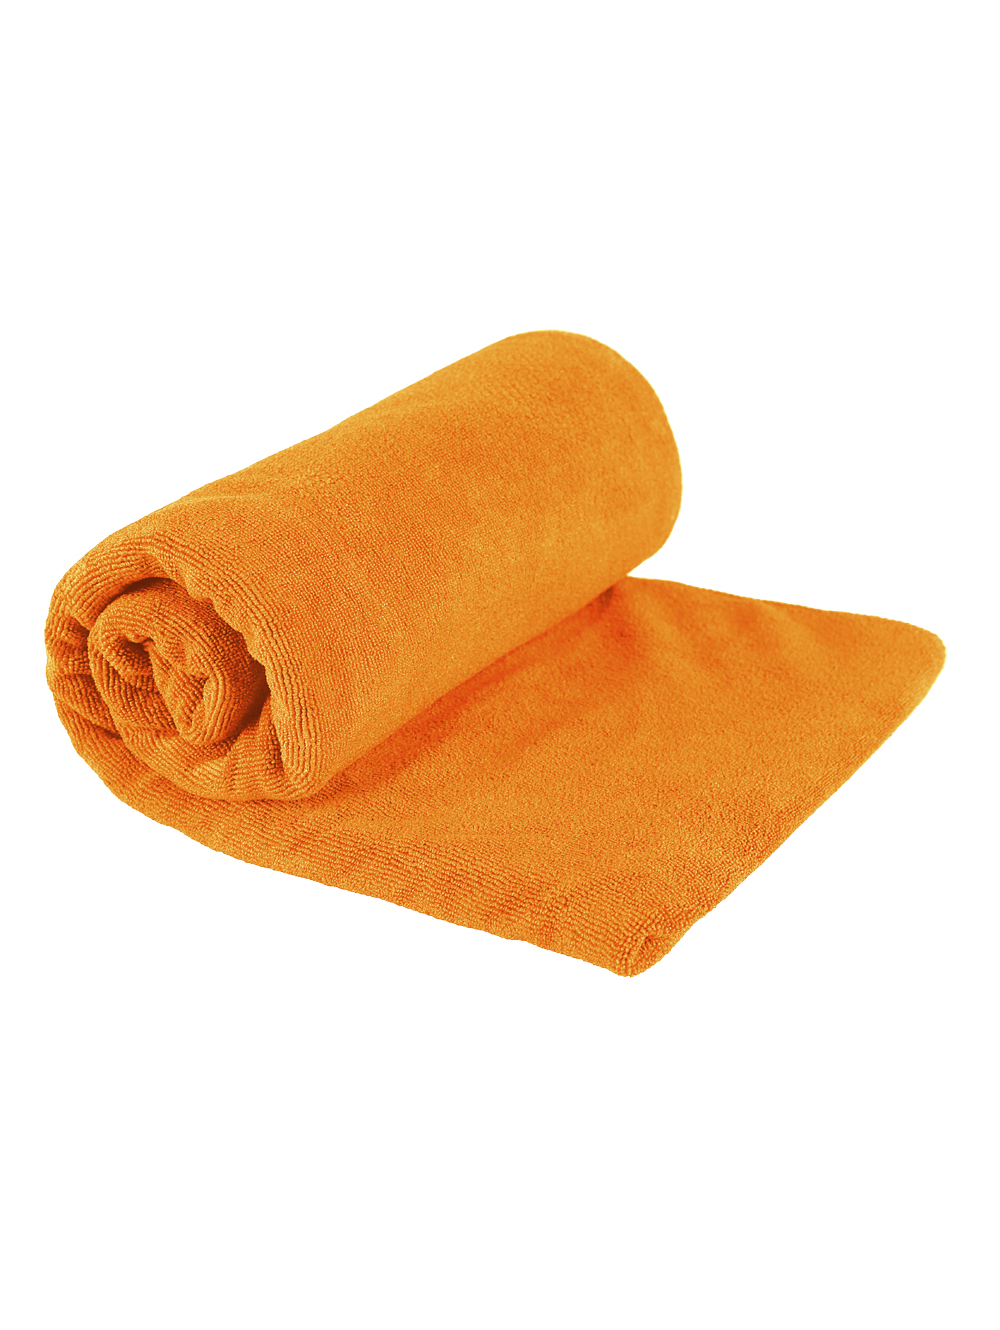 Полотенце Sea To Summit Tek Towel Small (Оранжевый)